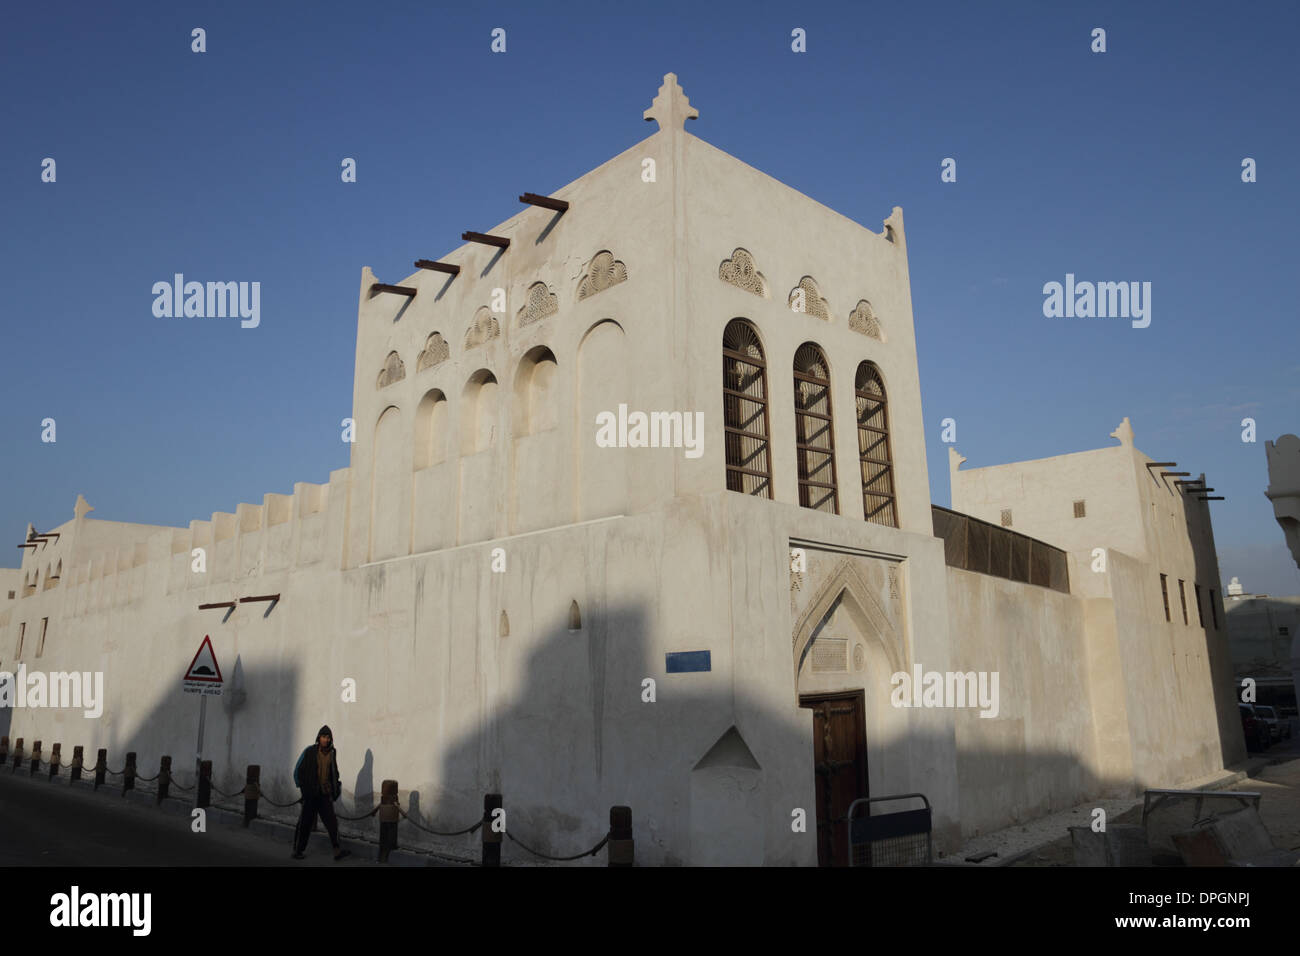 Vue extérieure du Beit cheikh Isa bin Ali house, situé sur la piste de Bahreïn Pearling, à Manama, Royaume de Bahreïn Banque D'Images